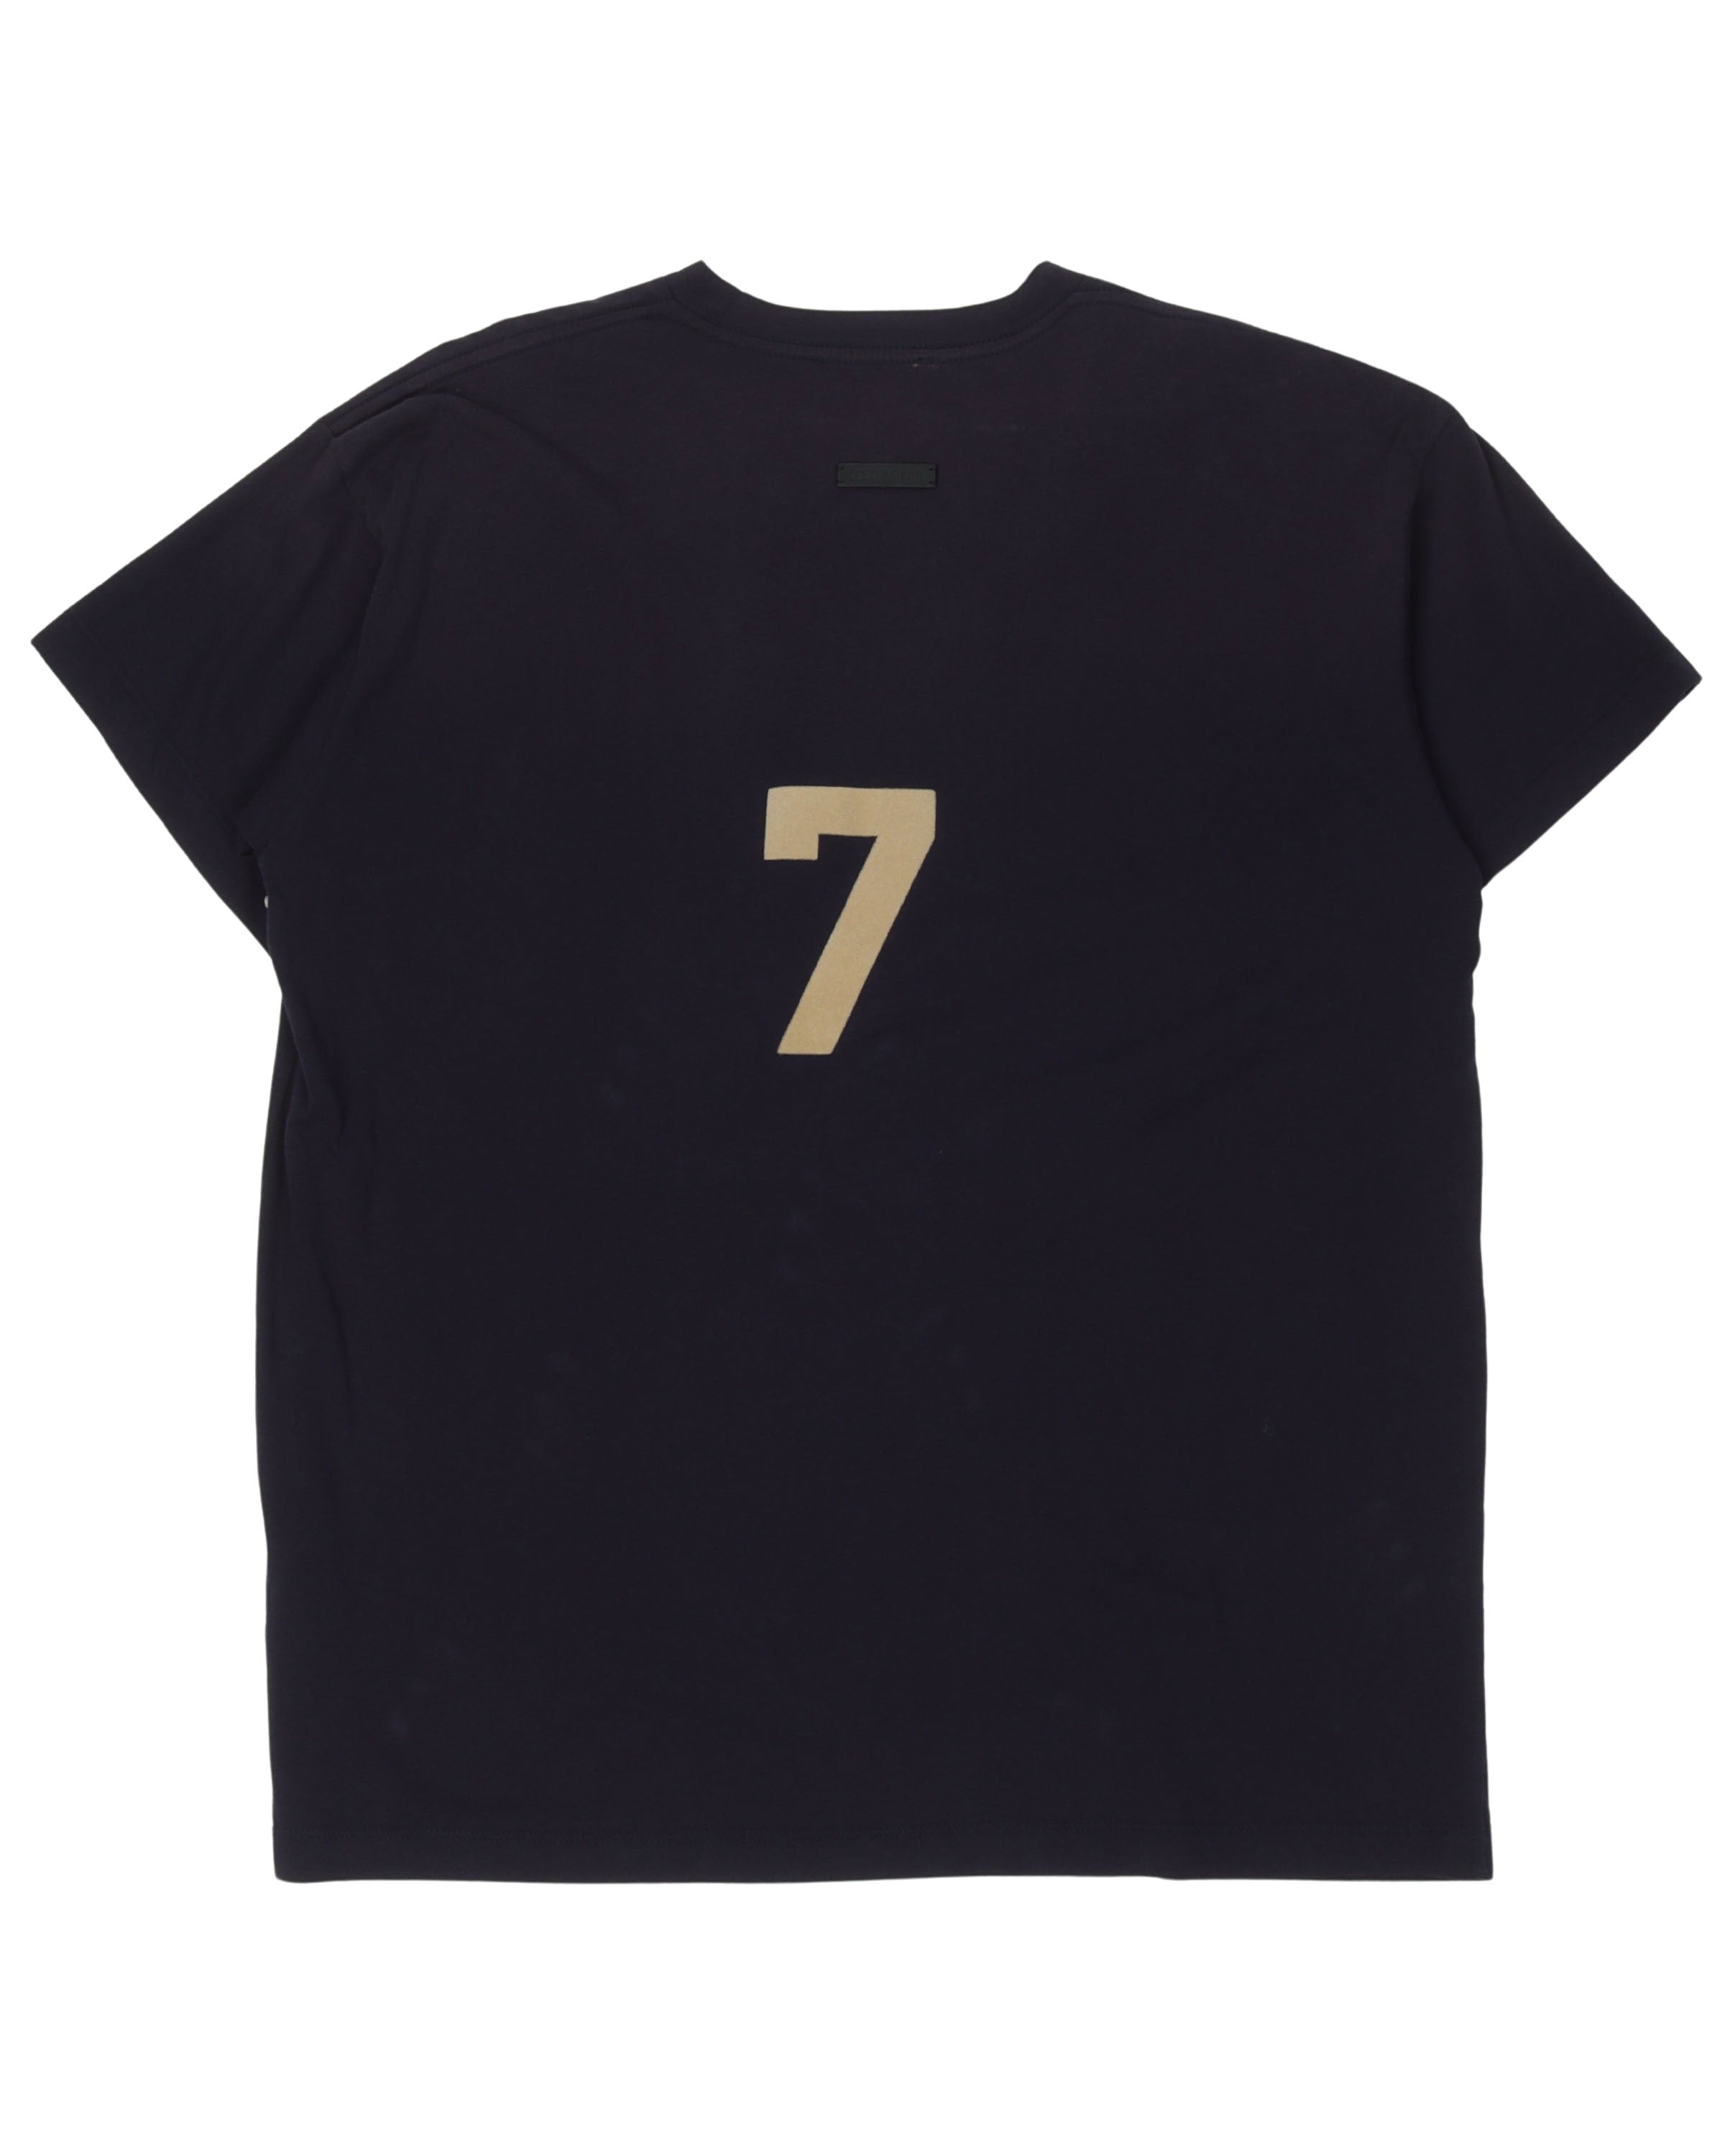 #7 T-Shirt